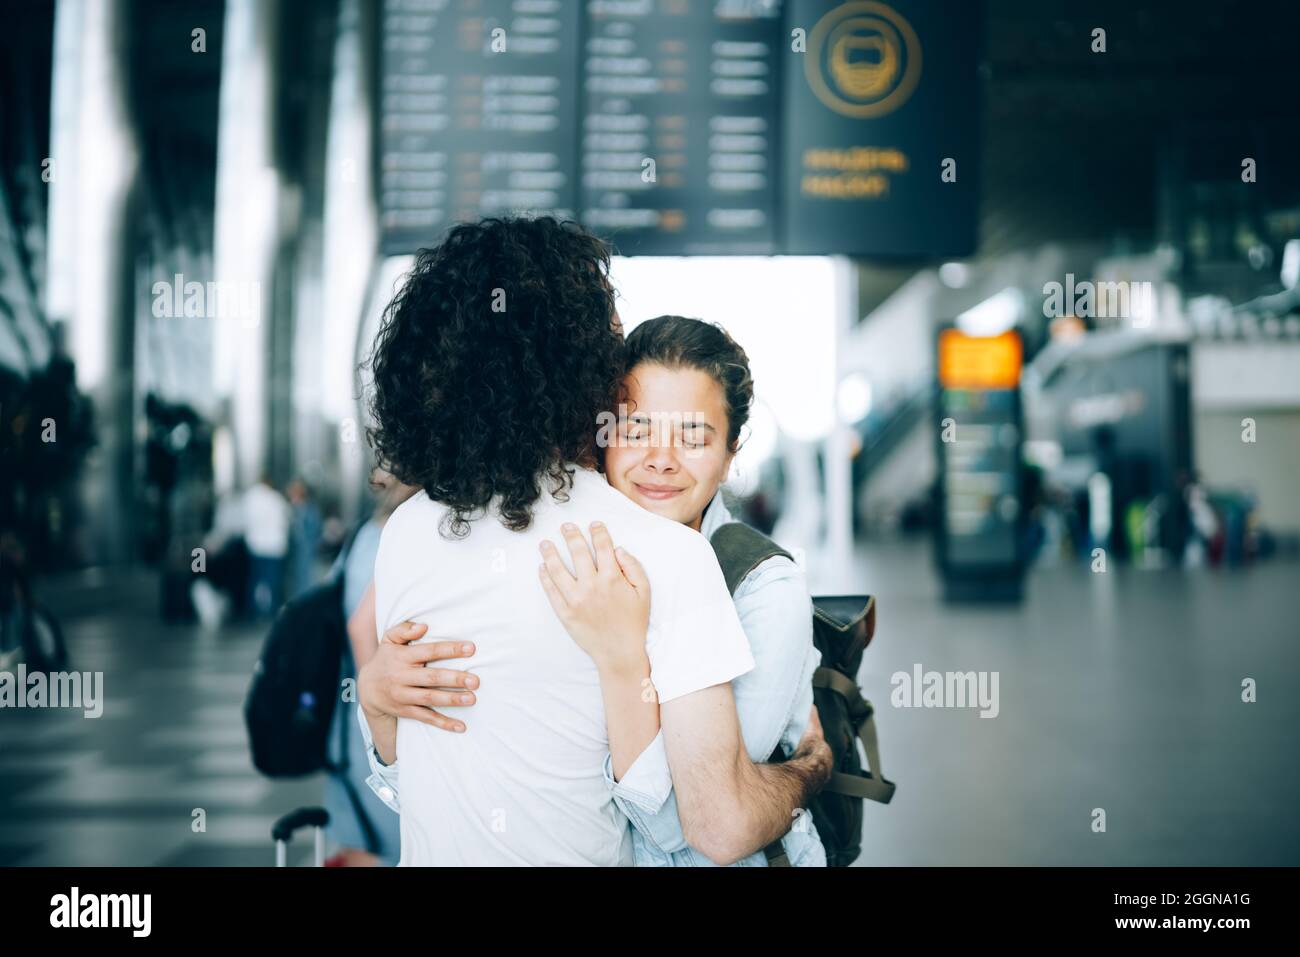 Das junge Familienpaar am Abflugbereich des Flughafens sagte Auf Wiedersehen oder hallo und umarmte sich mit einem Lächeln. Ankunft und Wiedersehen warten auf die Reise Stockfoto